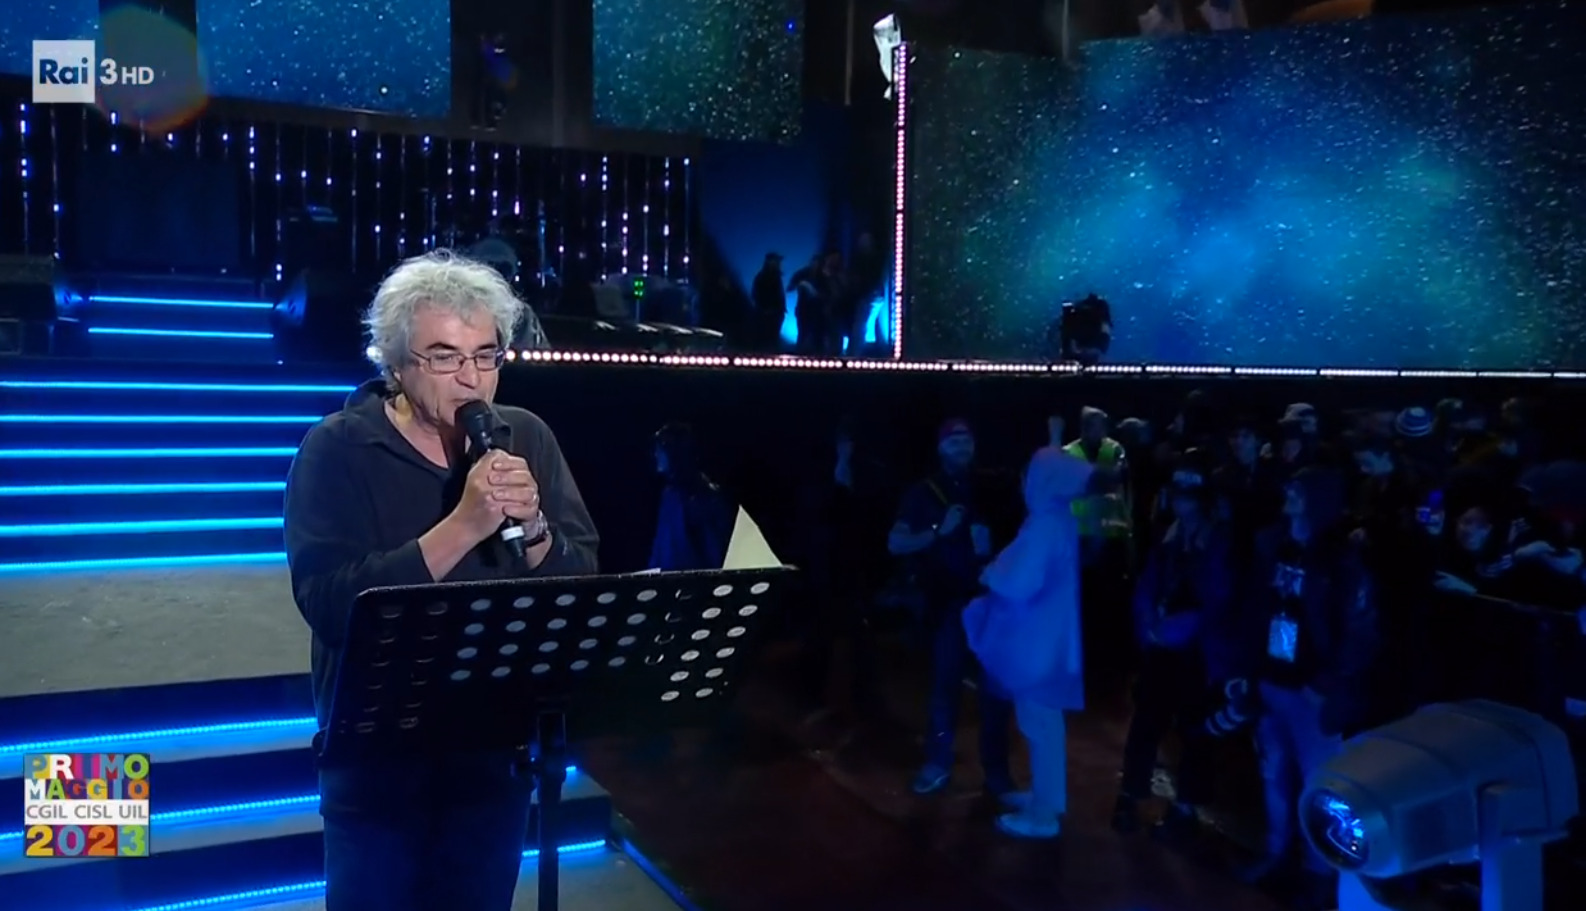 “Siete fantastici ragazzi”: l’intervento di Carlo Rovelli al concerto del Primo Maggio – VIDEO